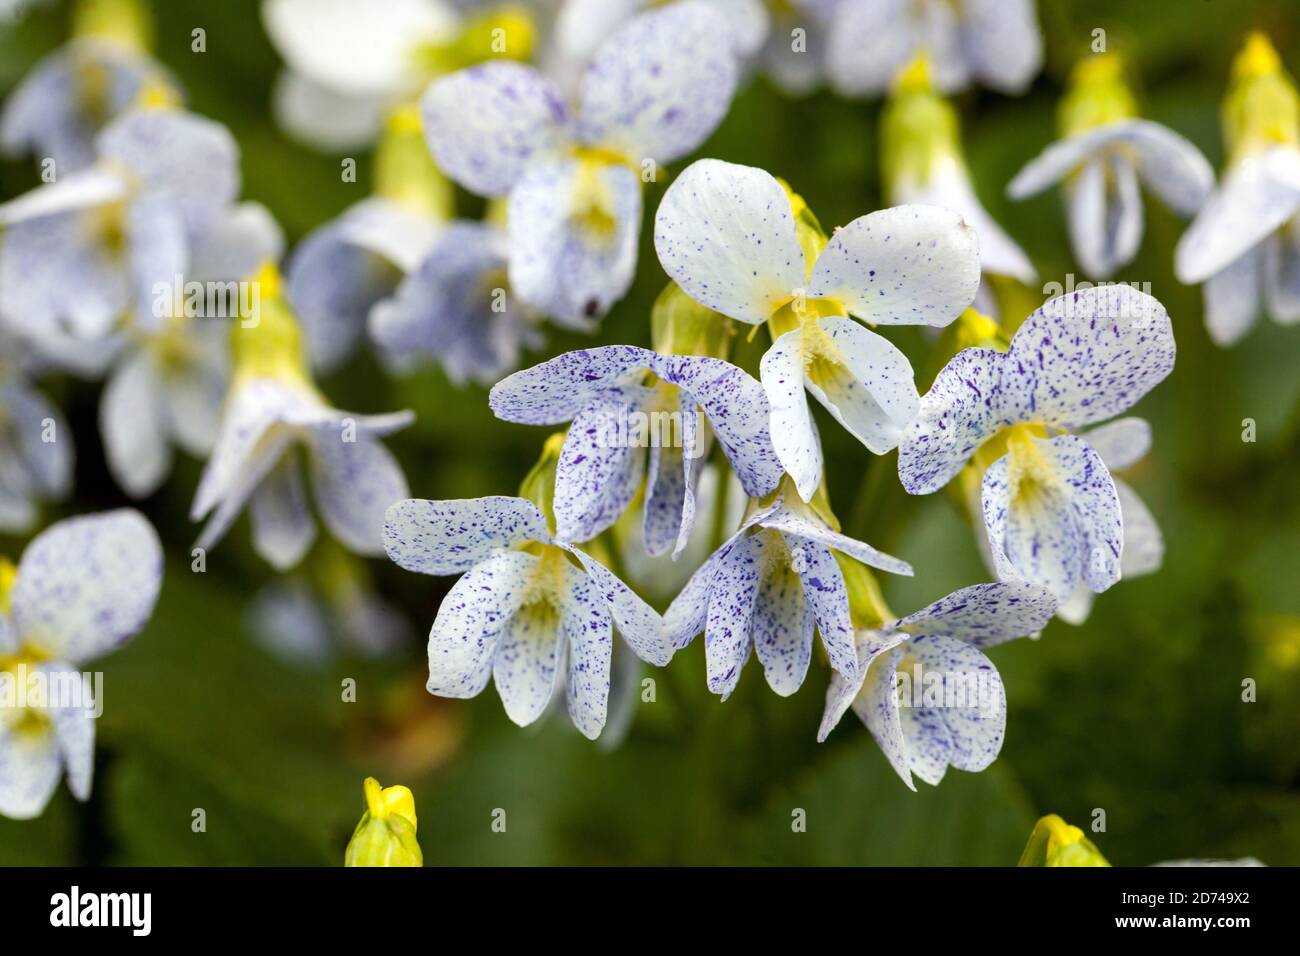 Viola sororia 'Freckles' Viola blanche, bleu blanc, teinte jaune des fleurs Banque D'Images